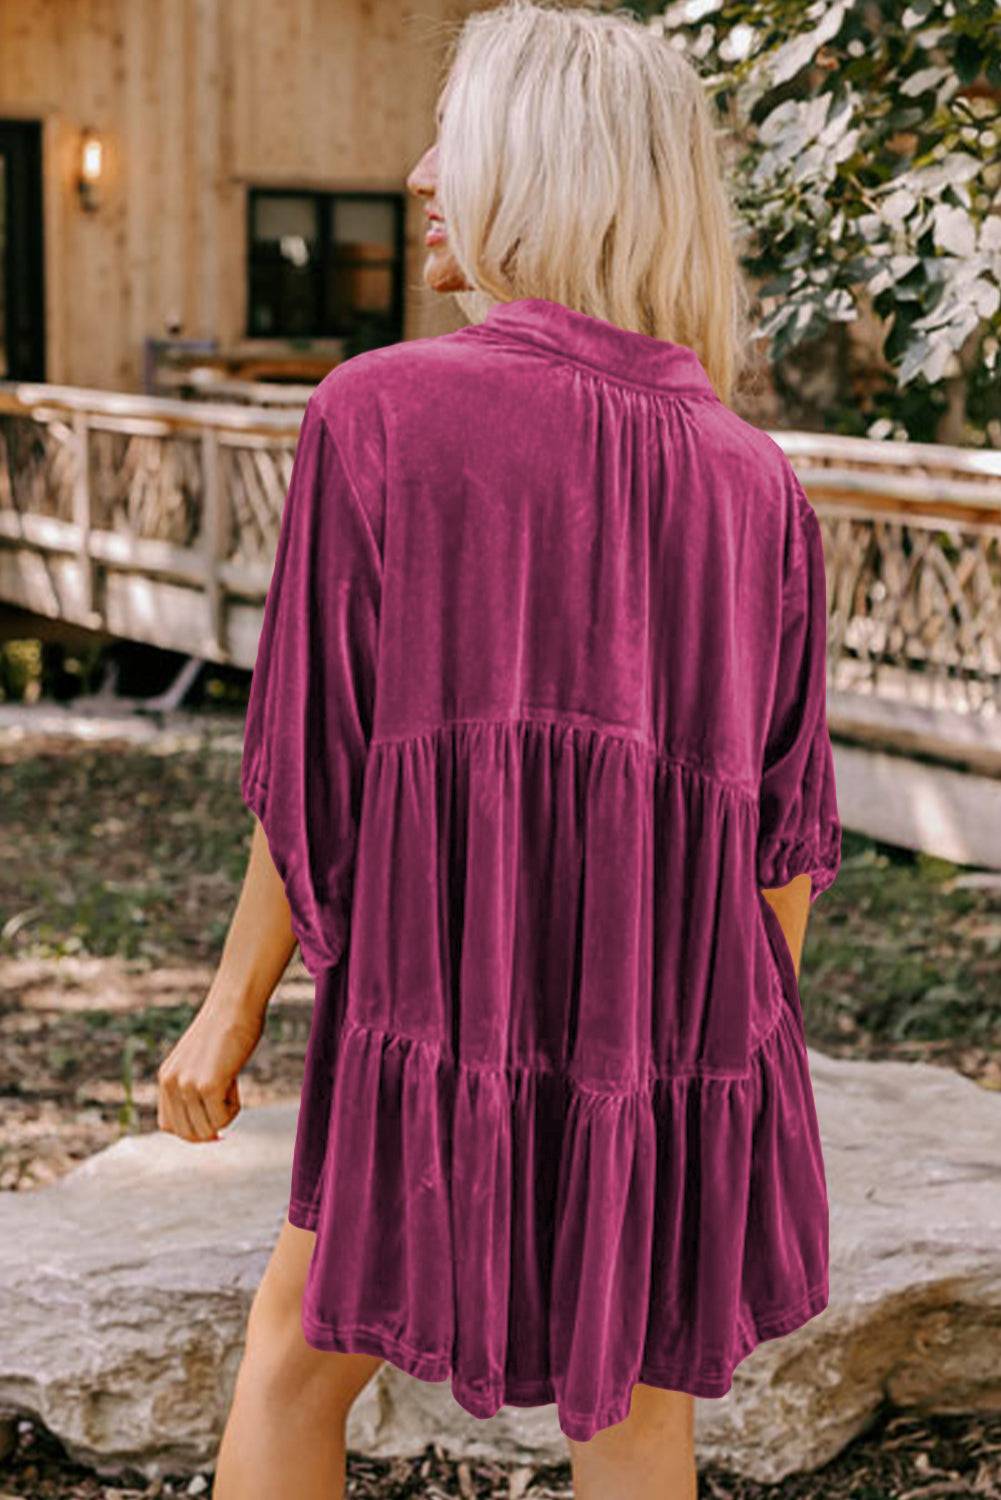 a woman in a purple dress walking towards a house